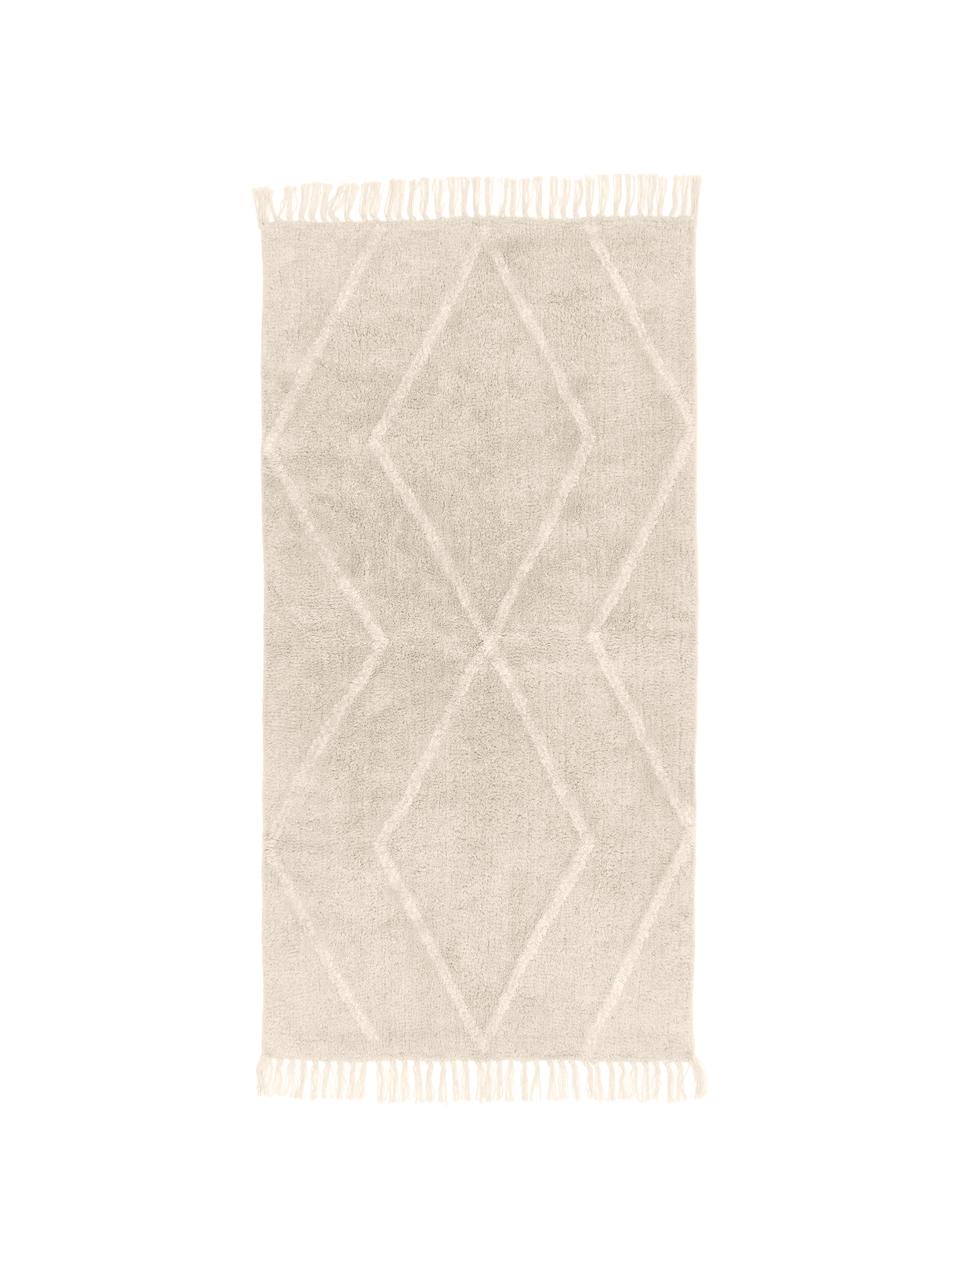 Tapis bohème coton beige à motif, tufté main Bina, Beige, blanc, larg. 80 x long. 150 cm (taille XS)